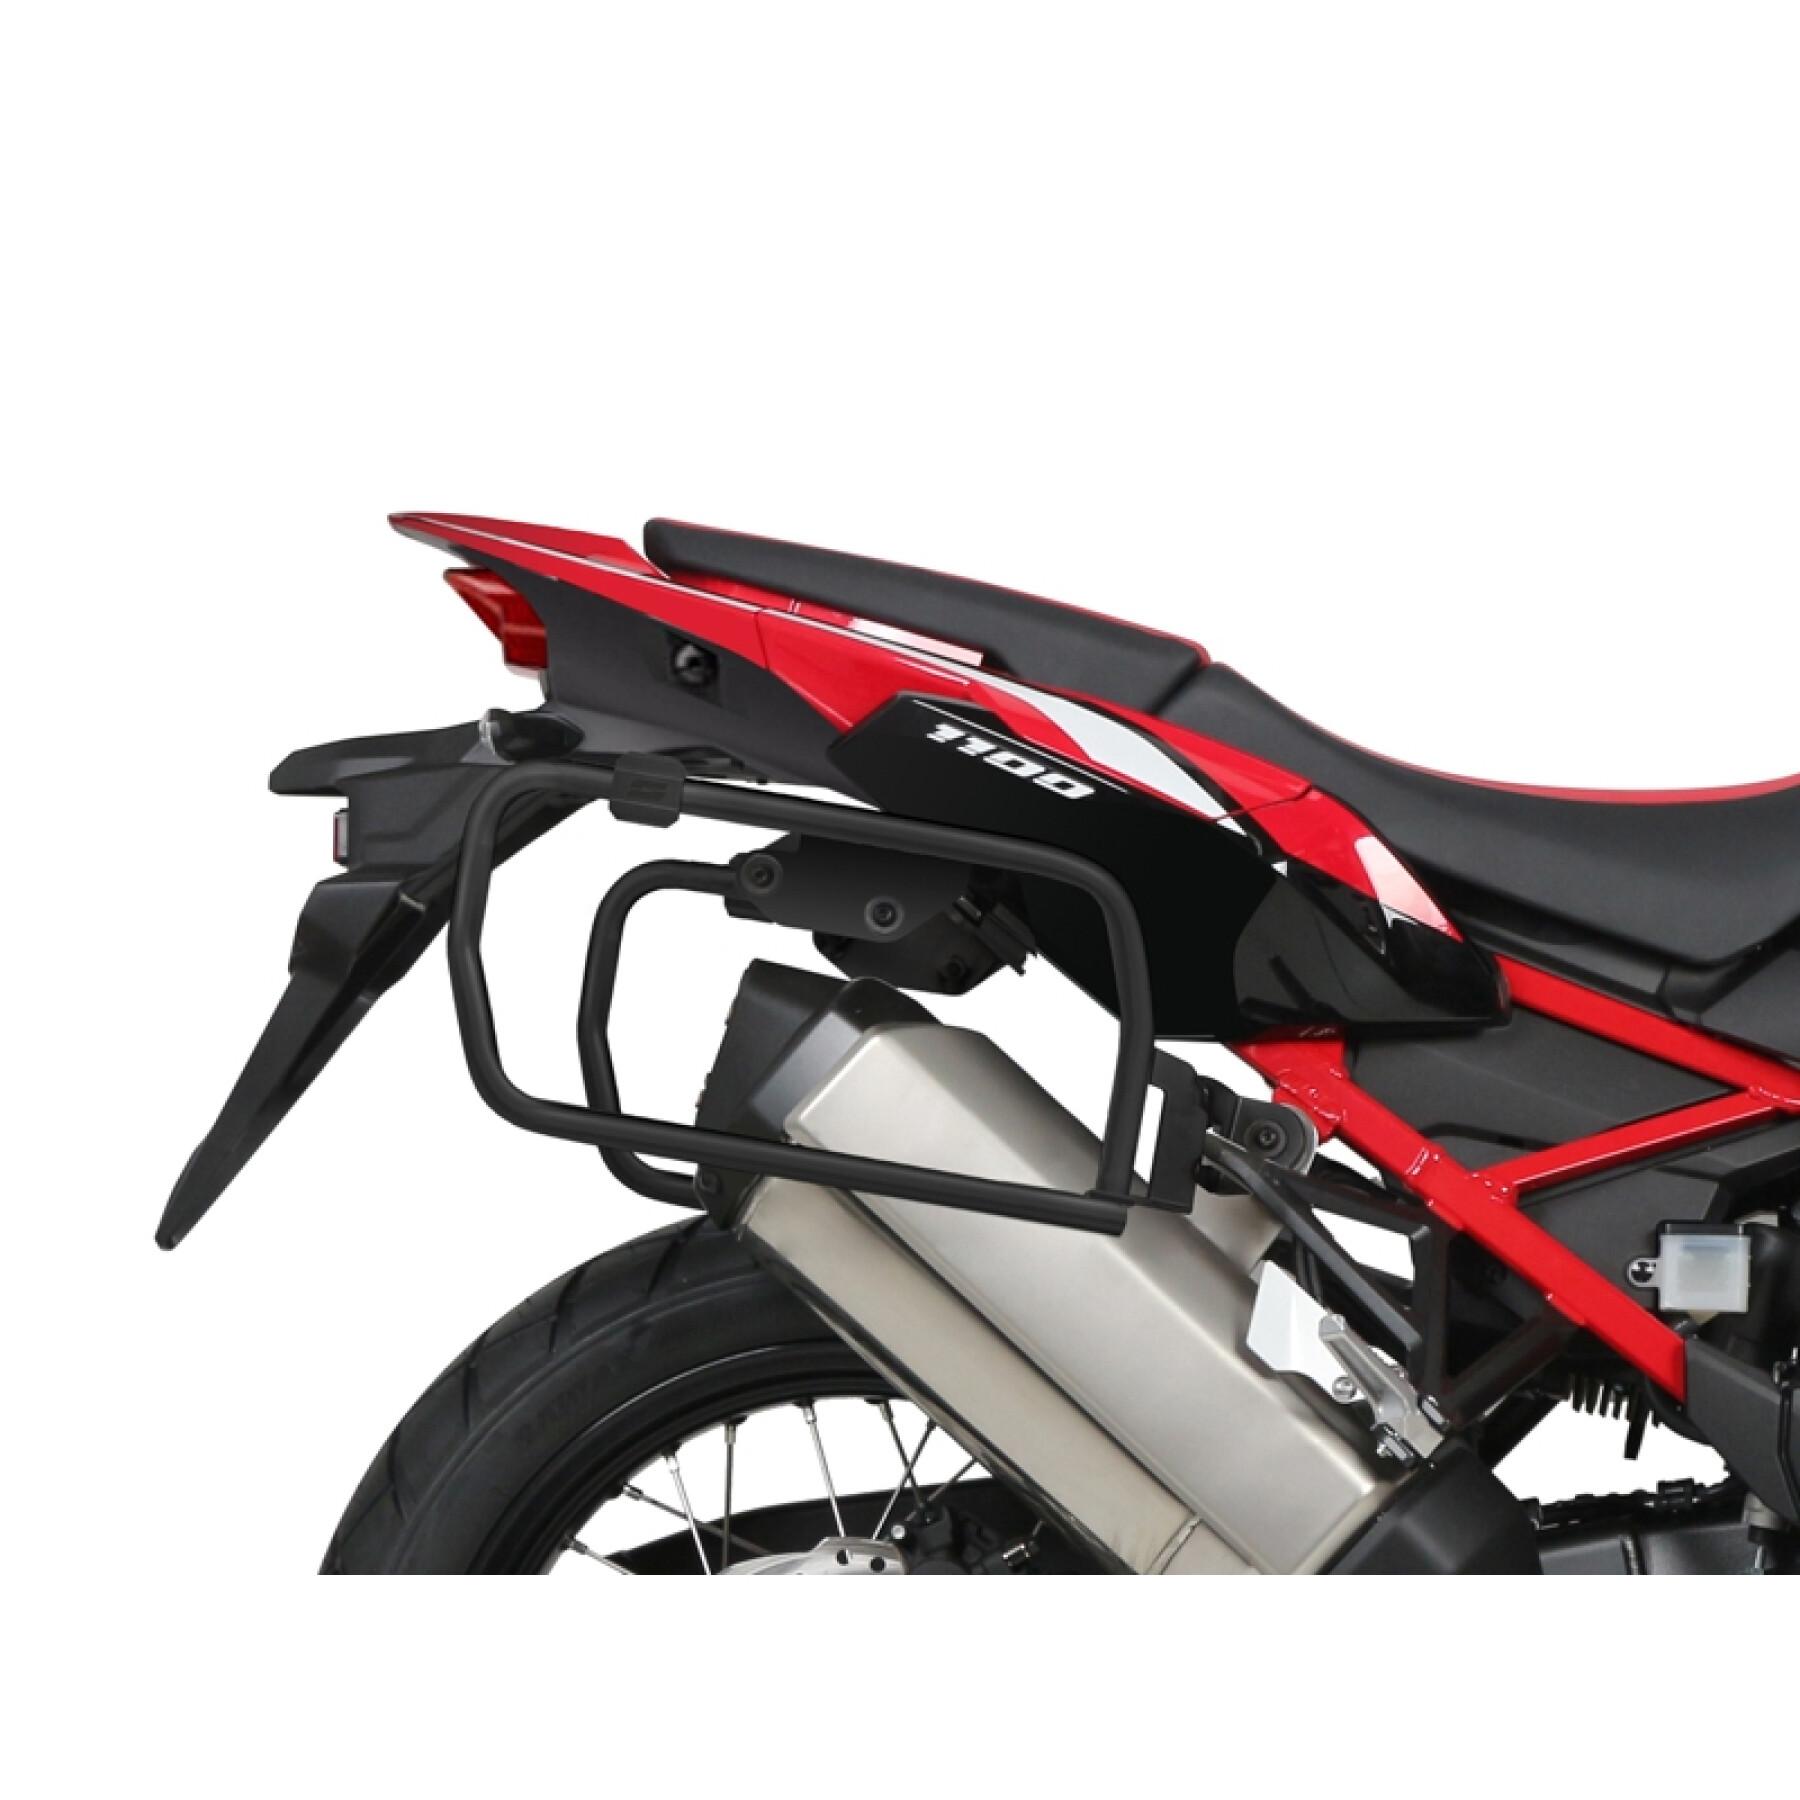 Sidostöd för motorcykel Shad 4P System Honda Crf 1100 L Africa Twin 2020-2020